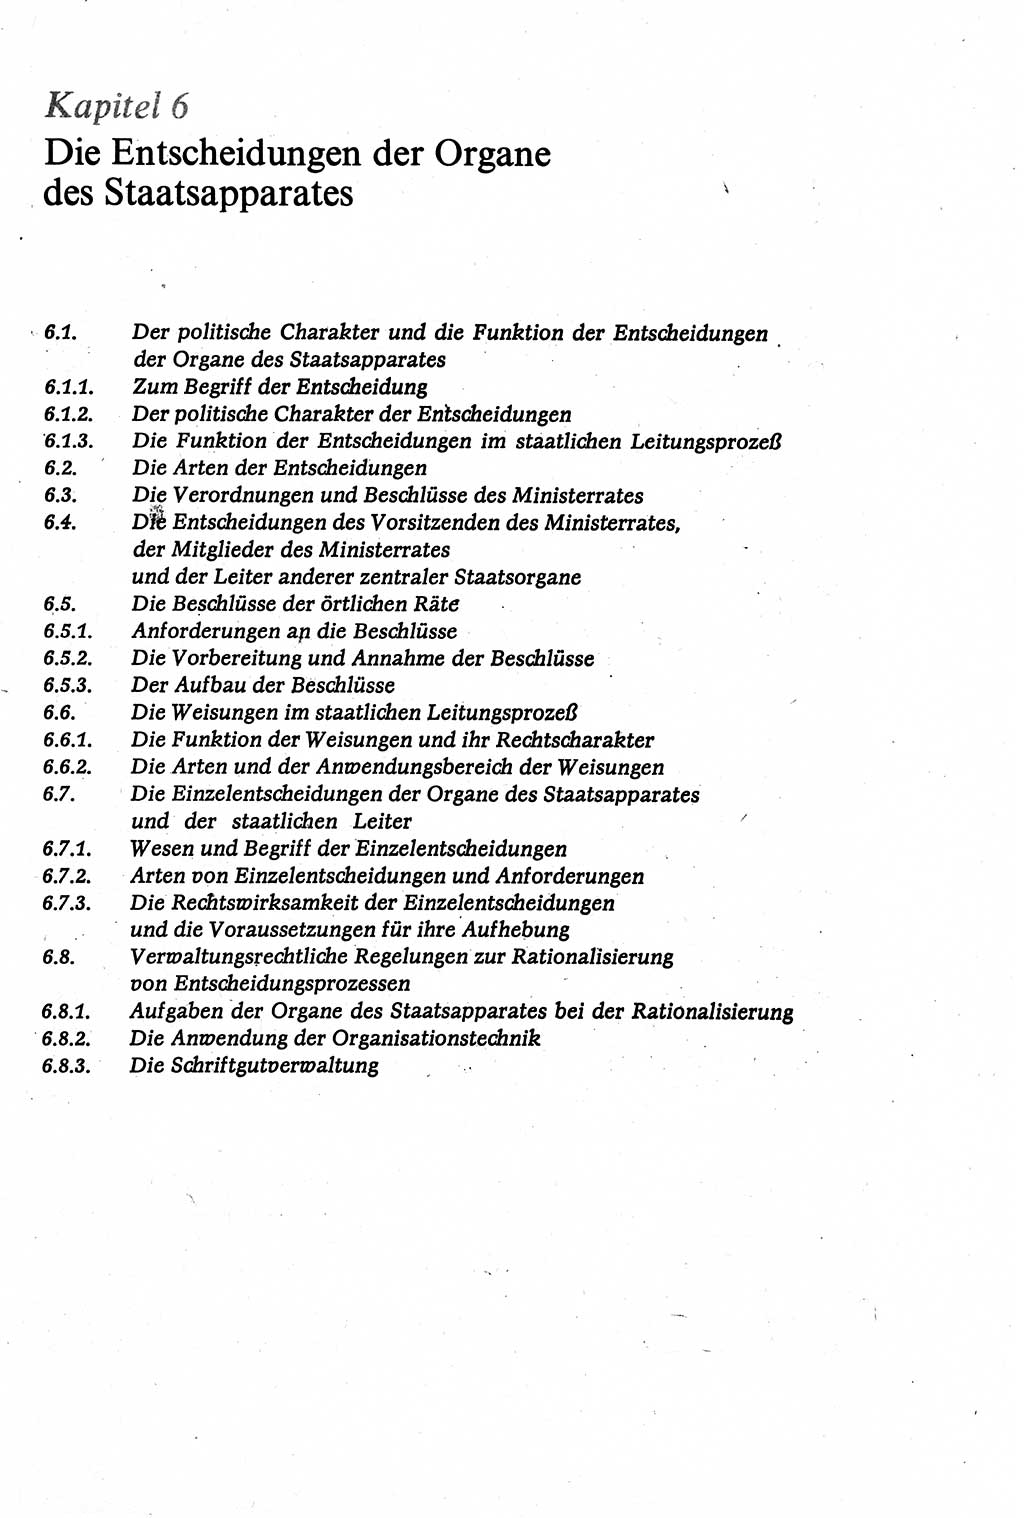 Verwaltungsrecht [Deutsche Demokratische Republik (DDR)], Lehrbuch 1979, Seite 221 (Verw.-R. DDR Lb. 1979, S. 221)